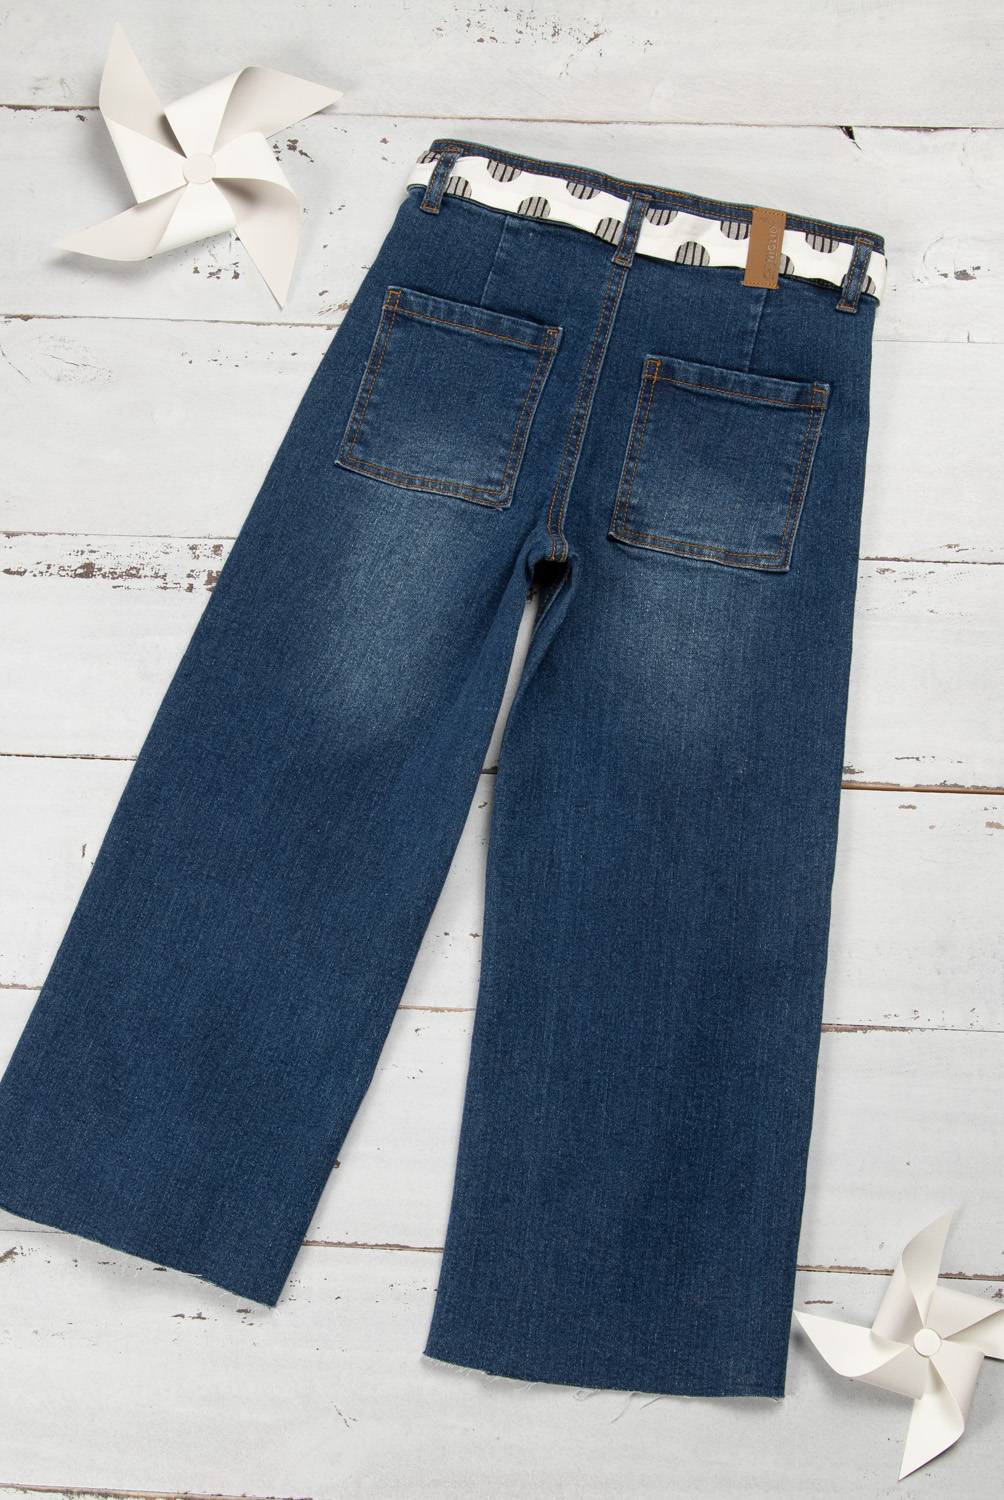 CONIGLIO - Jeans Con cinturón Denim Niña